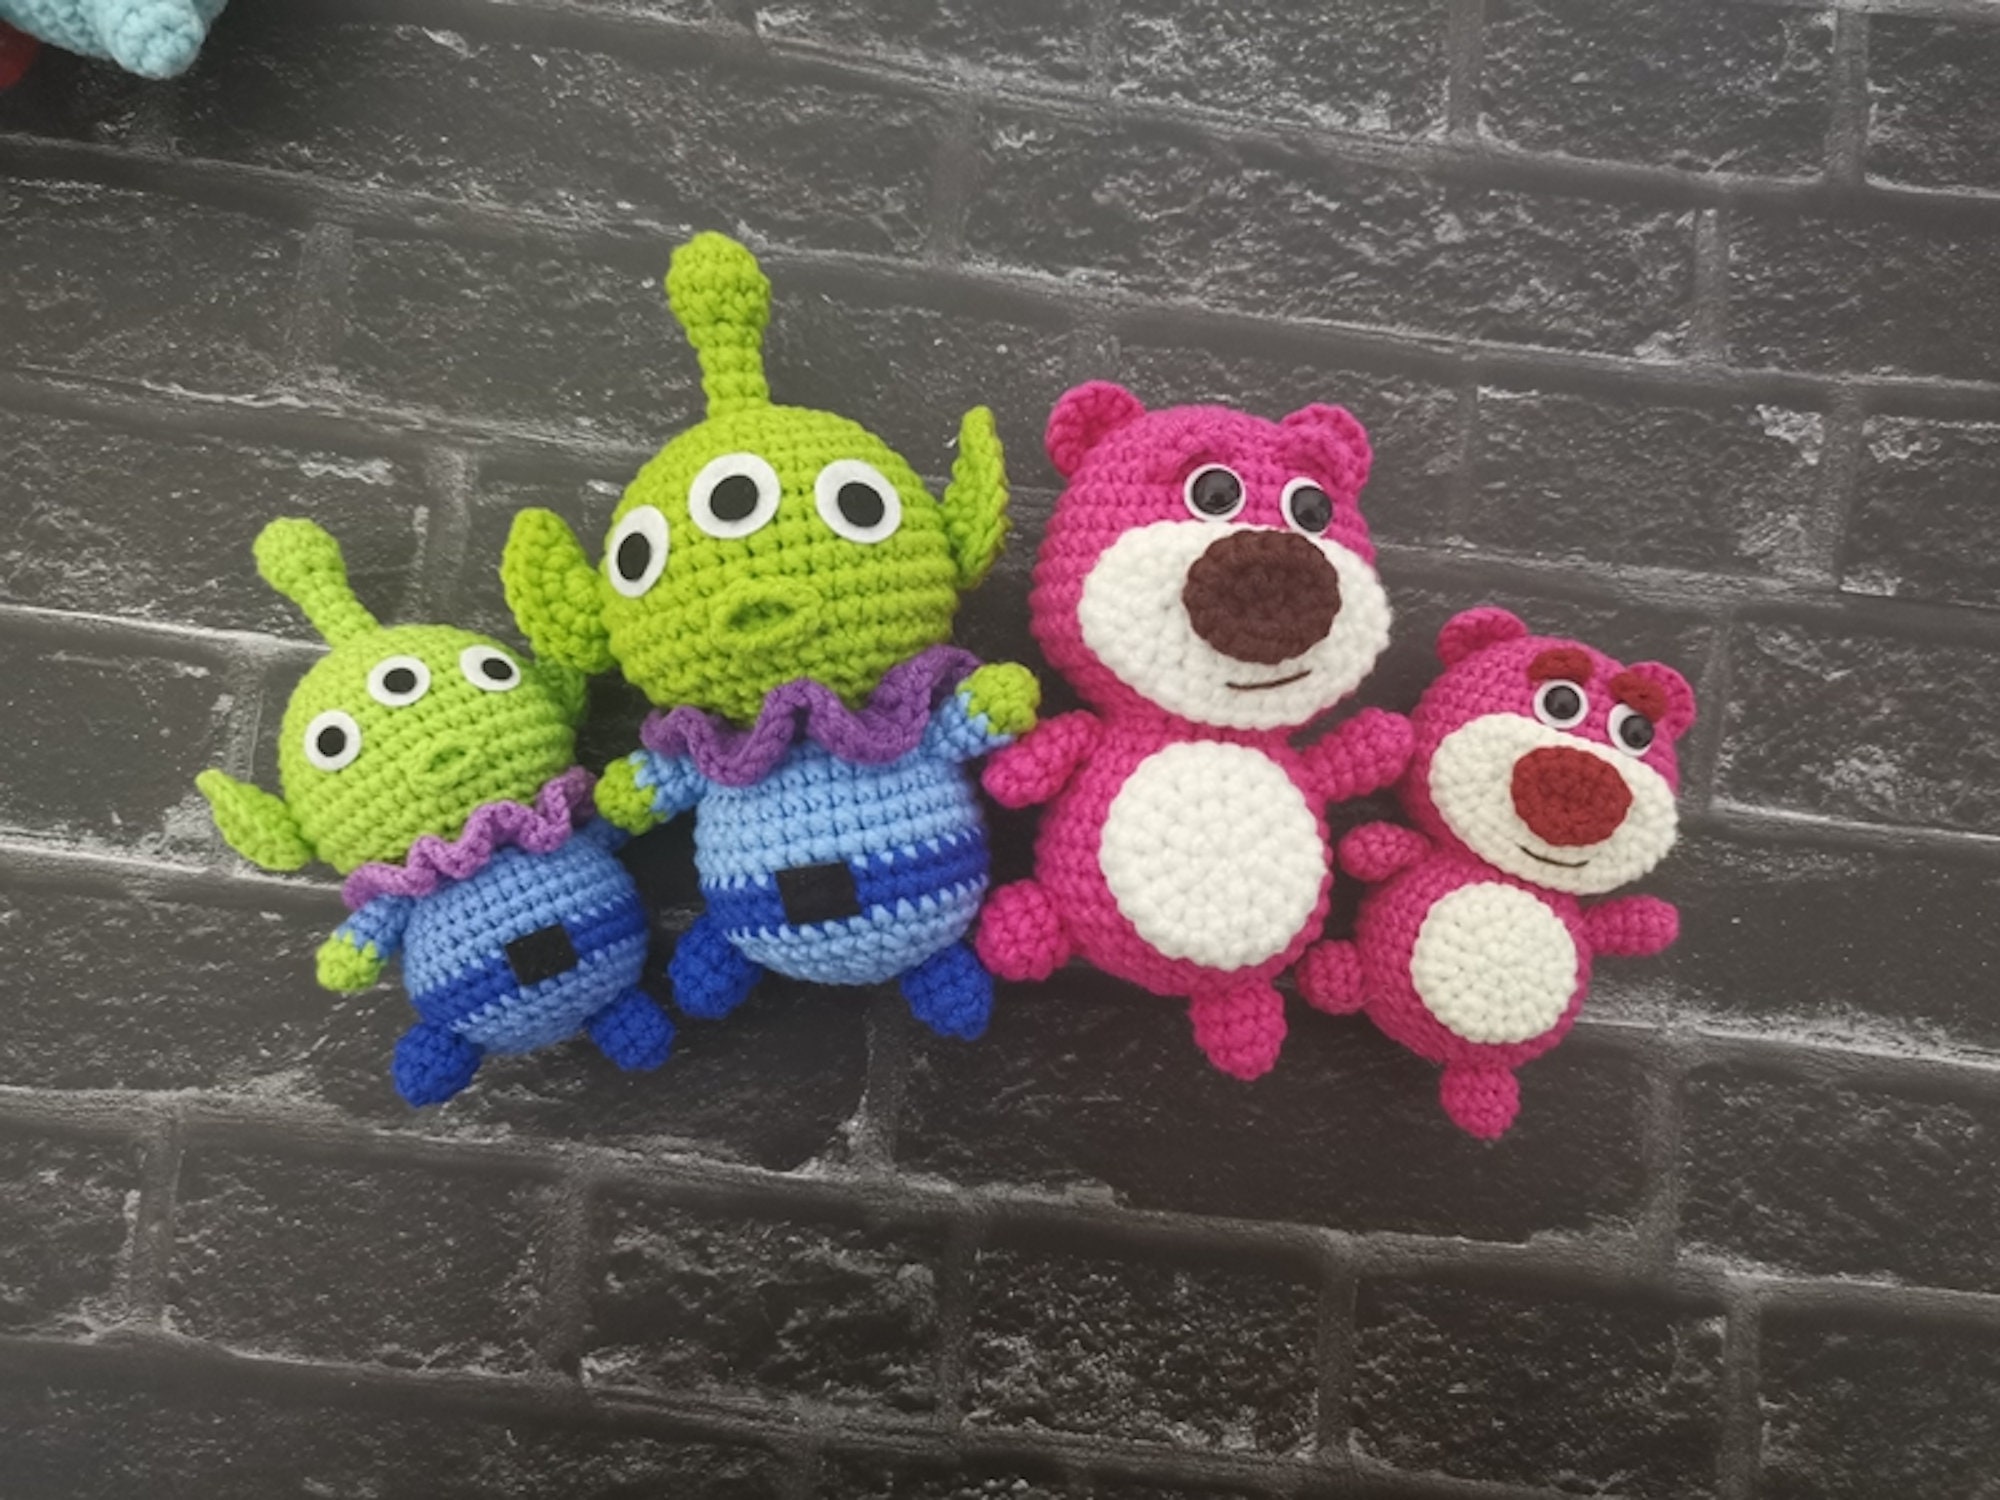 Crochet Amigurumi – Disney's Pluto